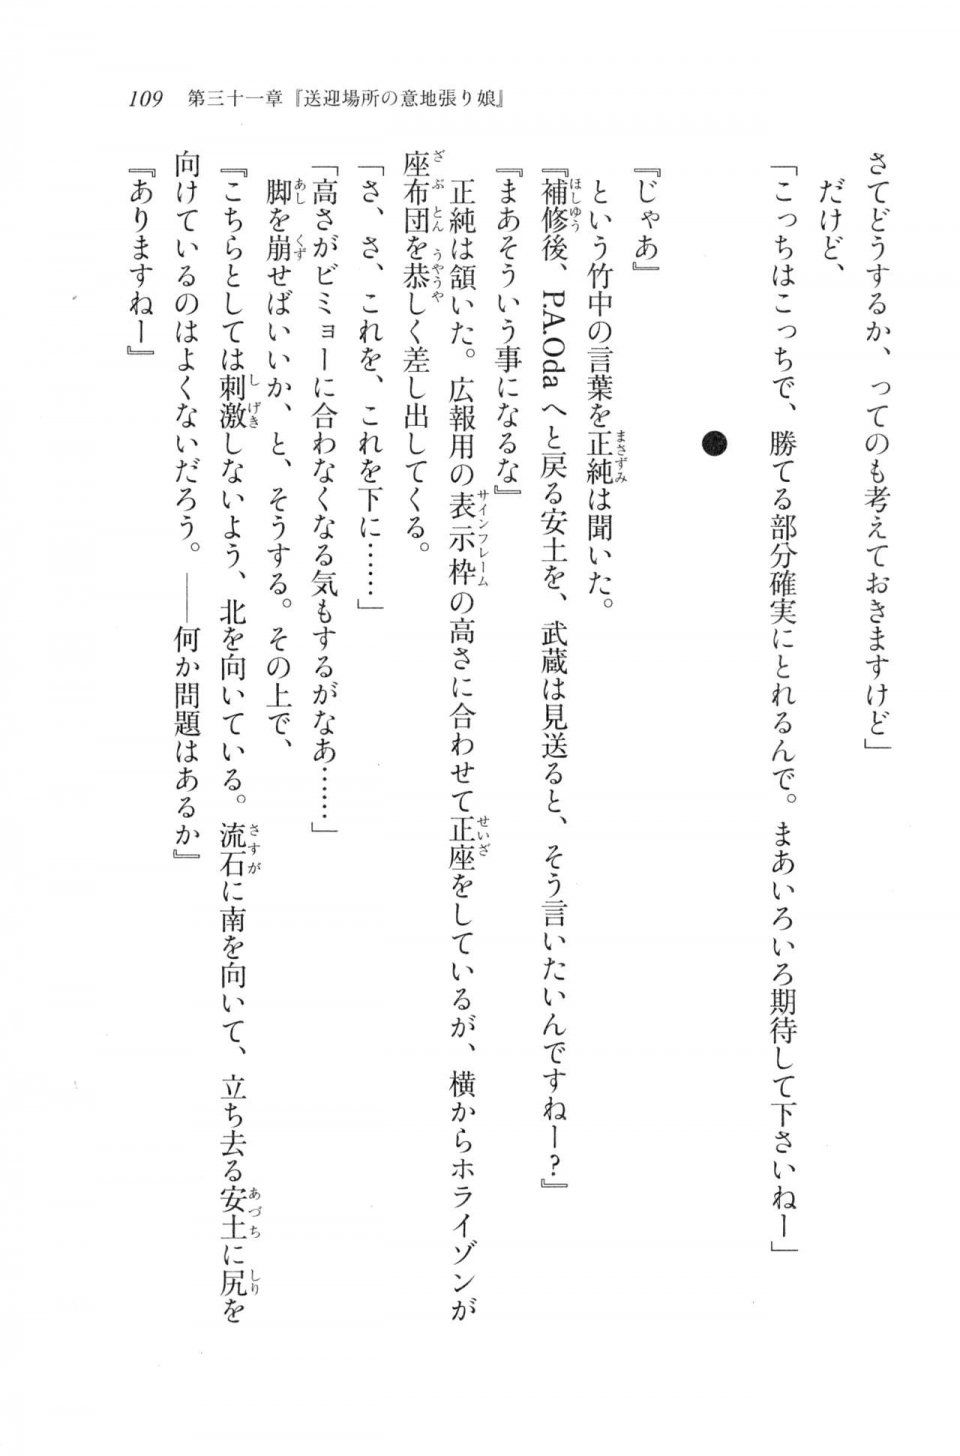 Kyoukai Senjou no Horizon LN Vol 20(8B) - Photo #109